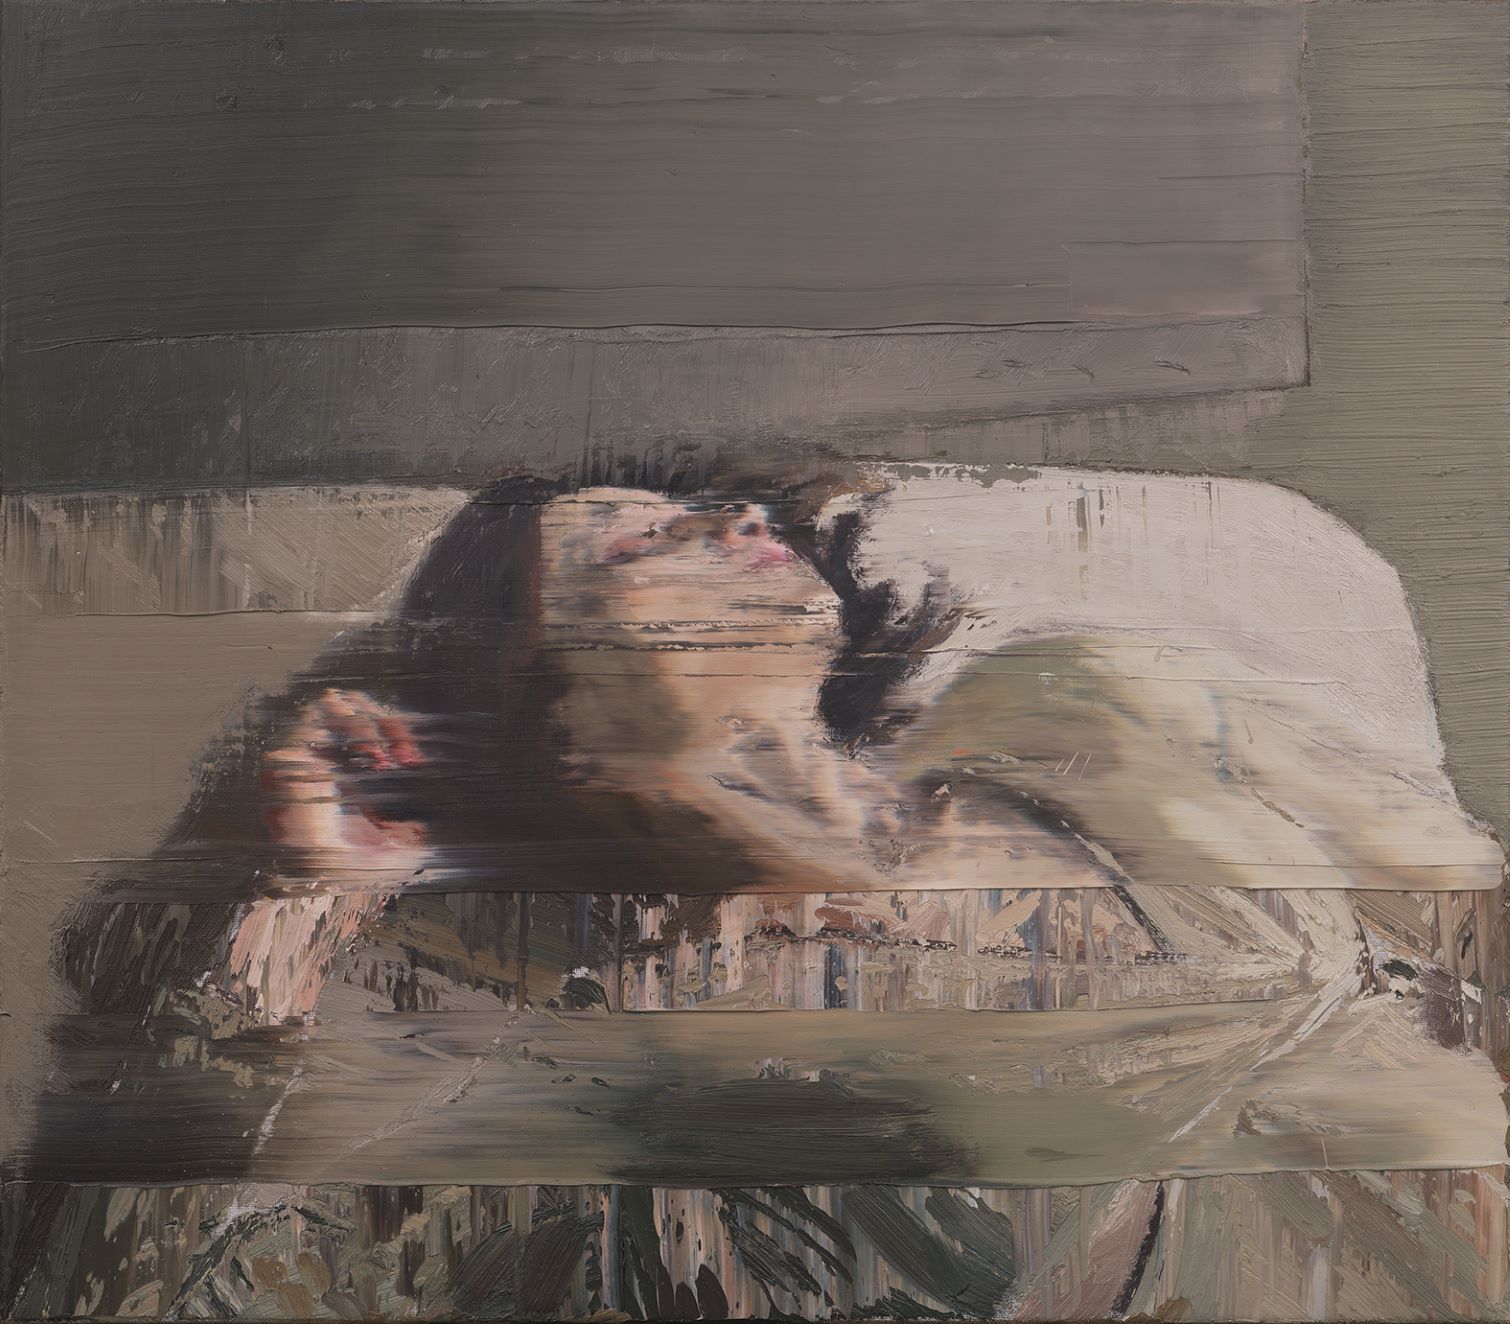 Cristallizzare l’intimità. La sublime “quotidiana” pittura di Andy Denzler in mostra (online) da Opera Gallery